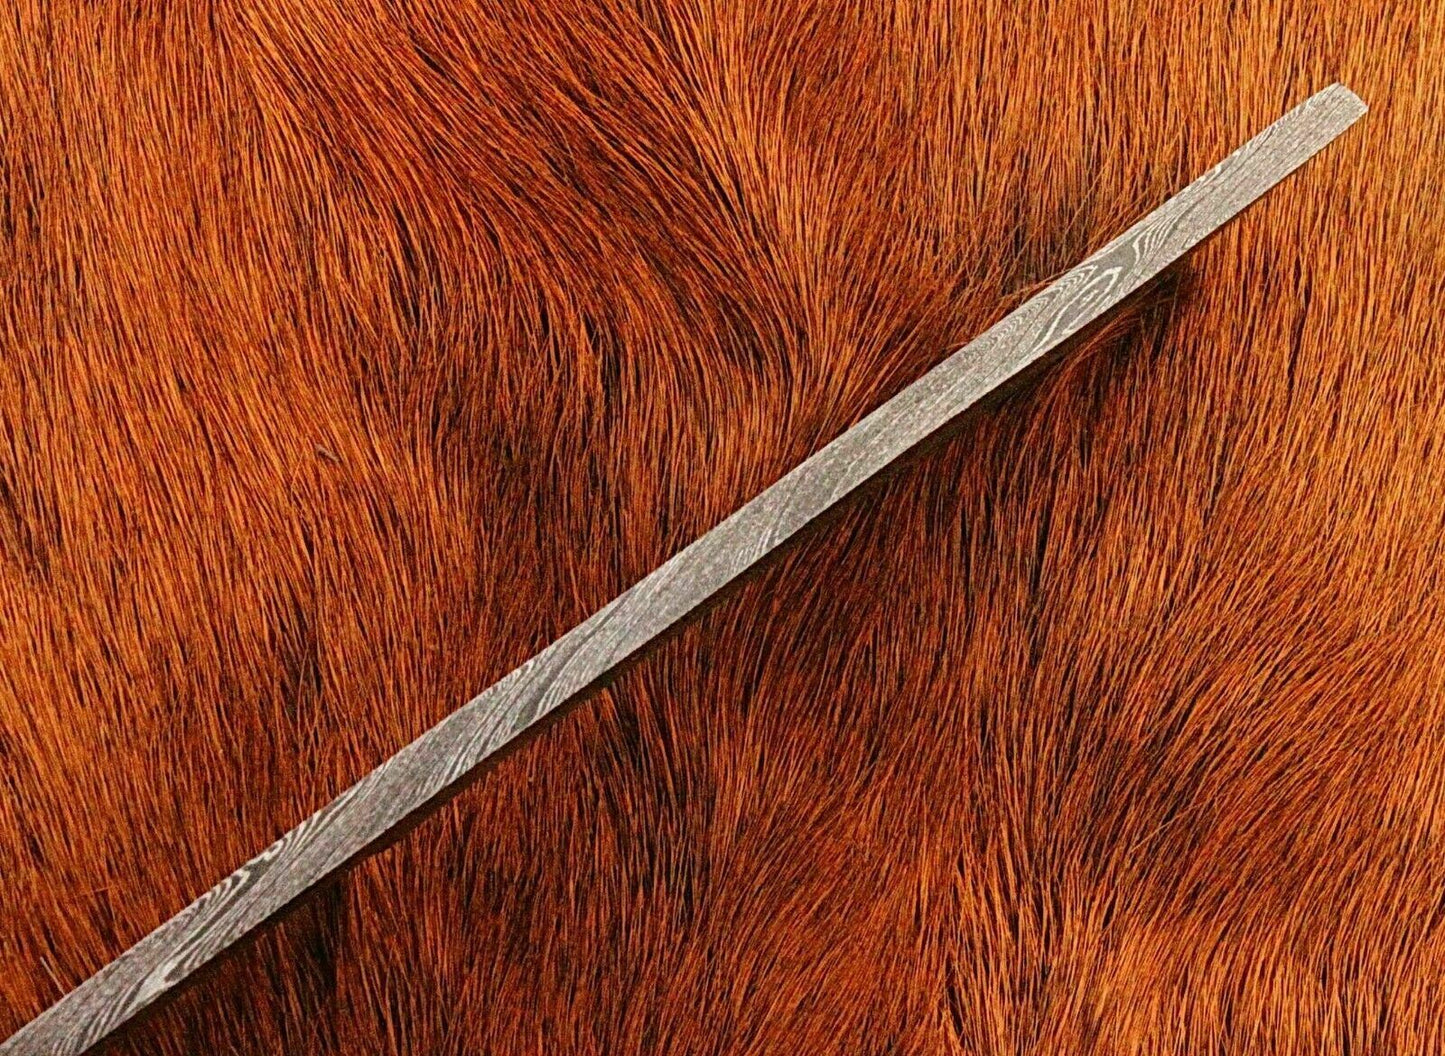 Handmade Damascus Steel Full Tang Blank Blade for Knife Making Supply "(BB104)